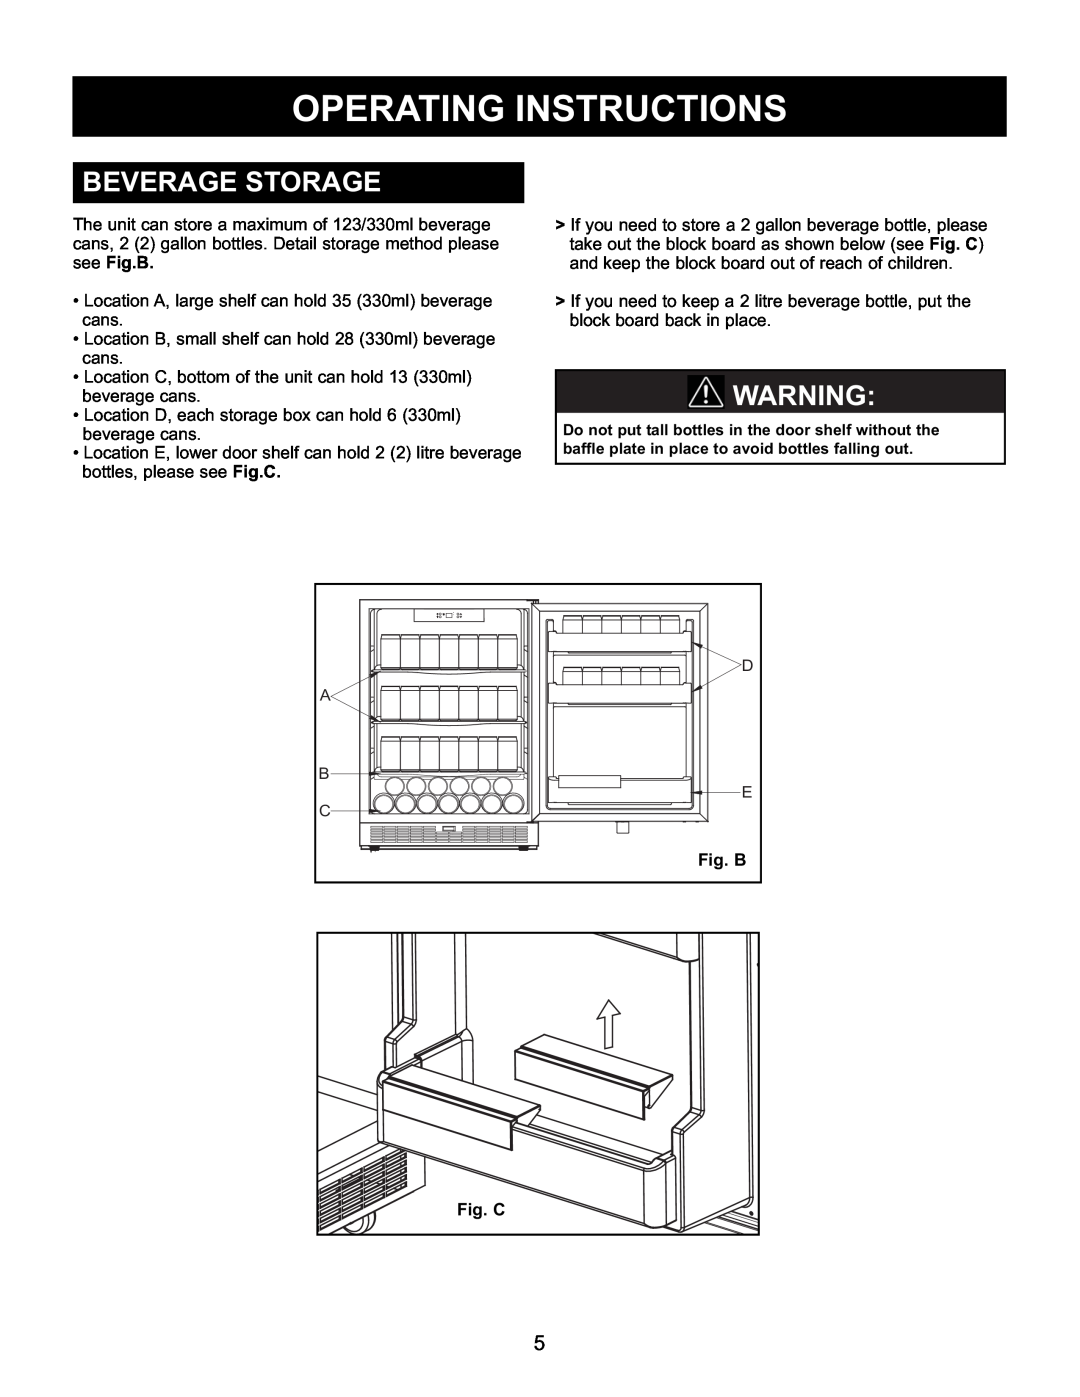 Danby DAR154BLSST manual Beverage Storage, Fig. B, Fig. C, Operating Instructions 